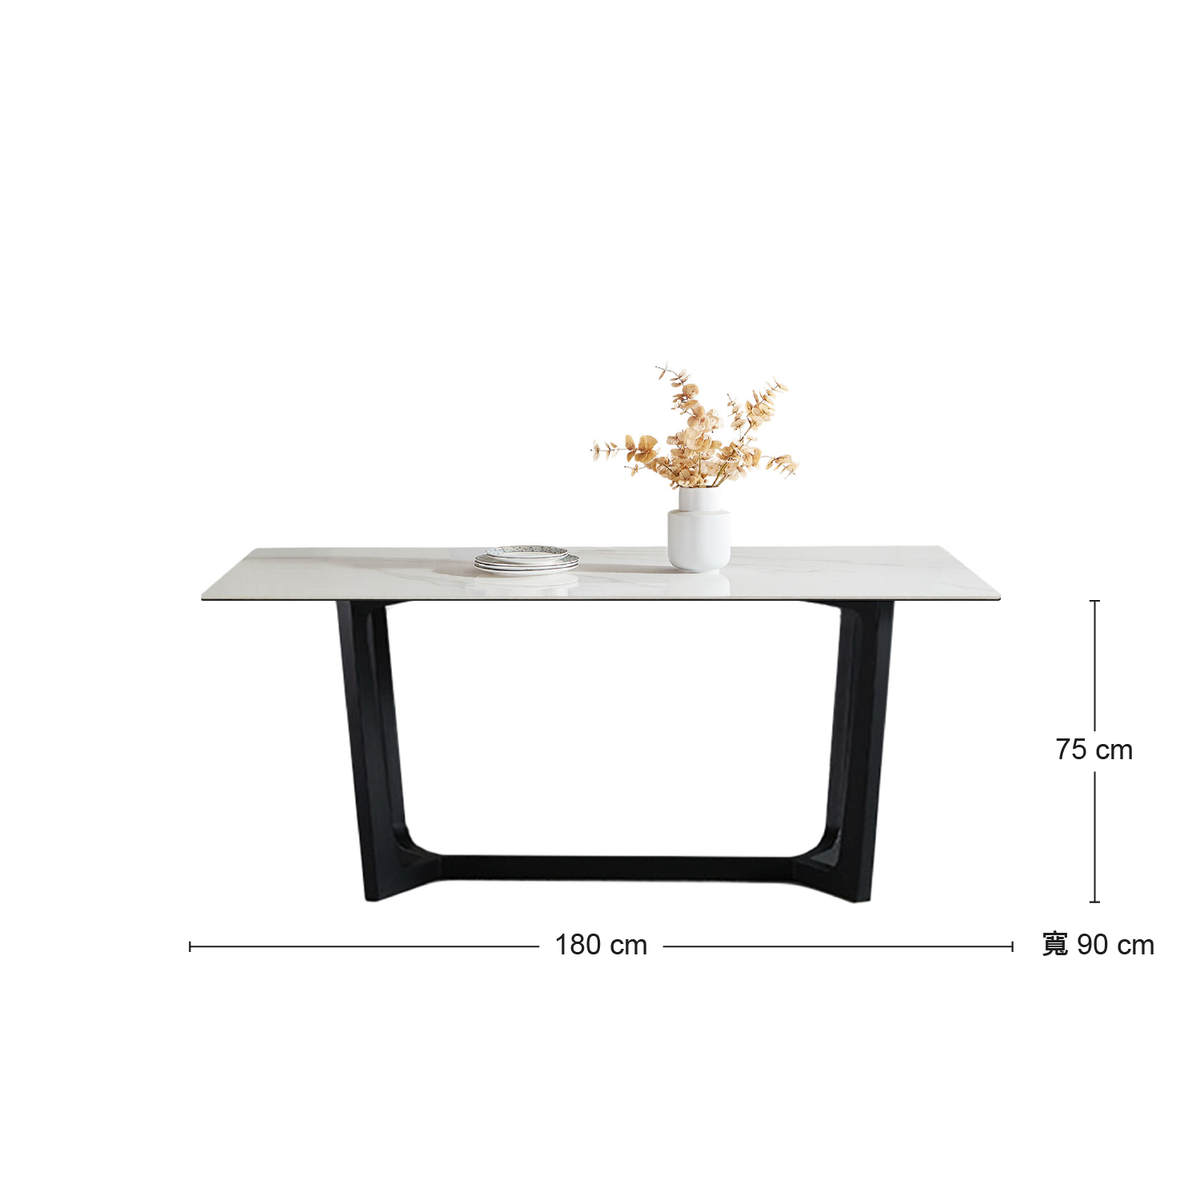 《金標福利品》TORROX 複合岩板餐桌 180公分